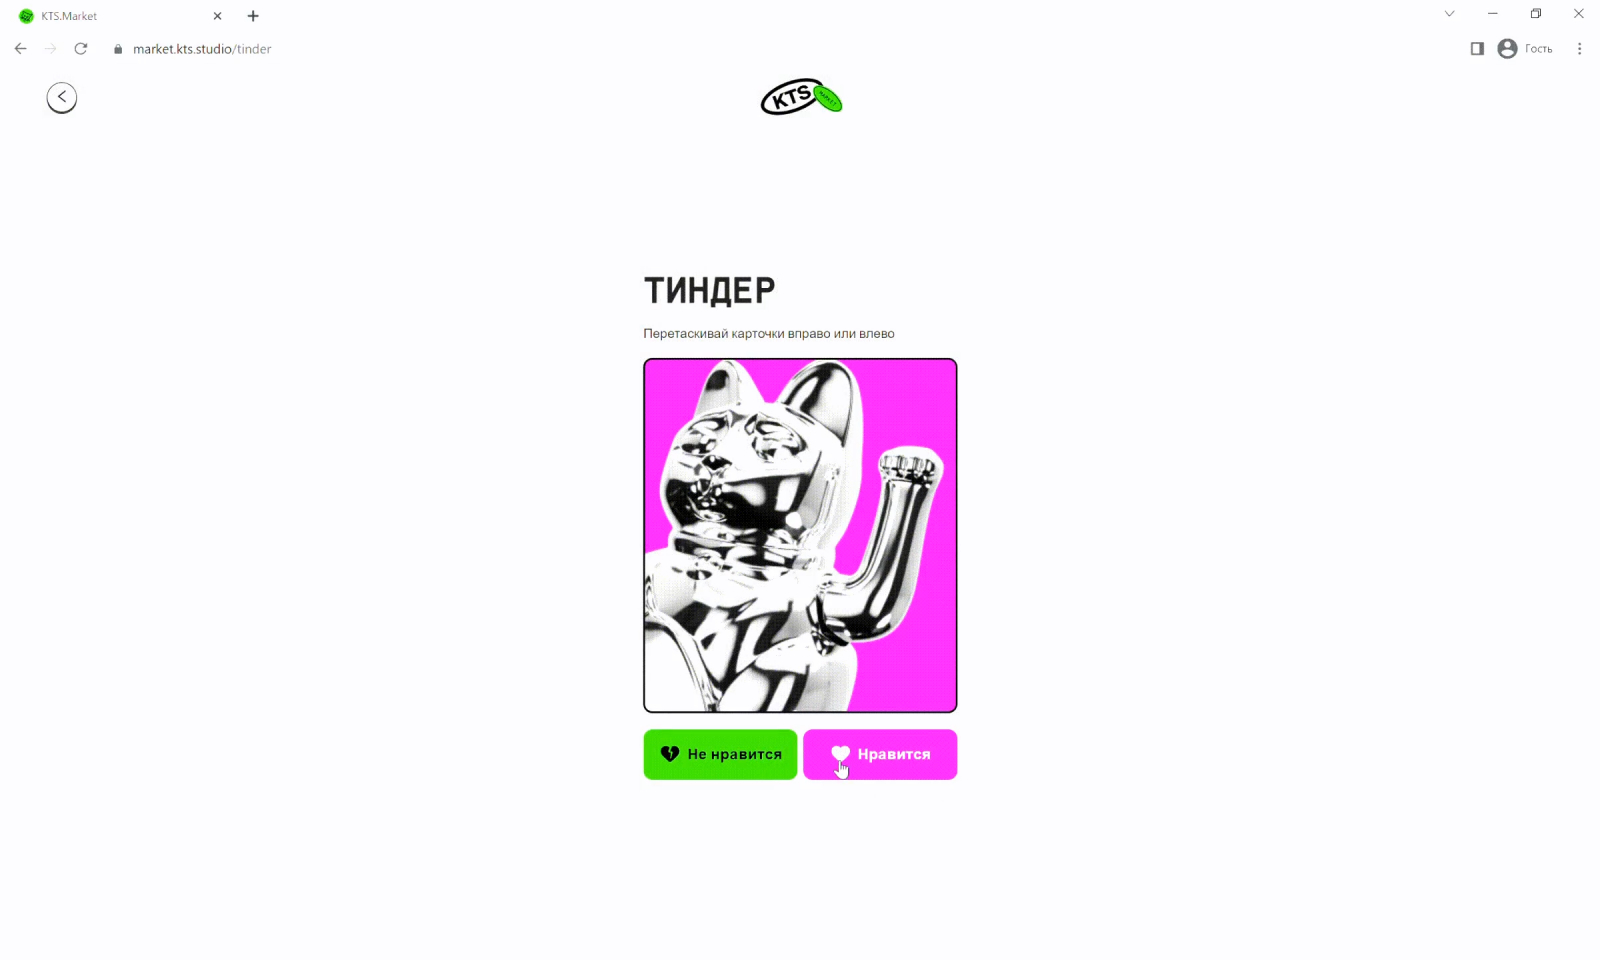 «Тиндер»: можно настроить наполнение карточек и тип переключения — свайпом или по нажатию на кнопку.